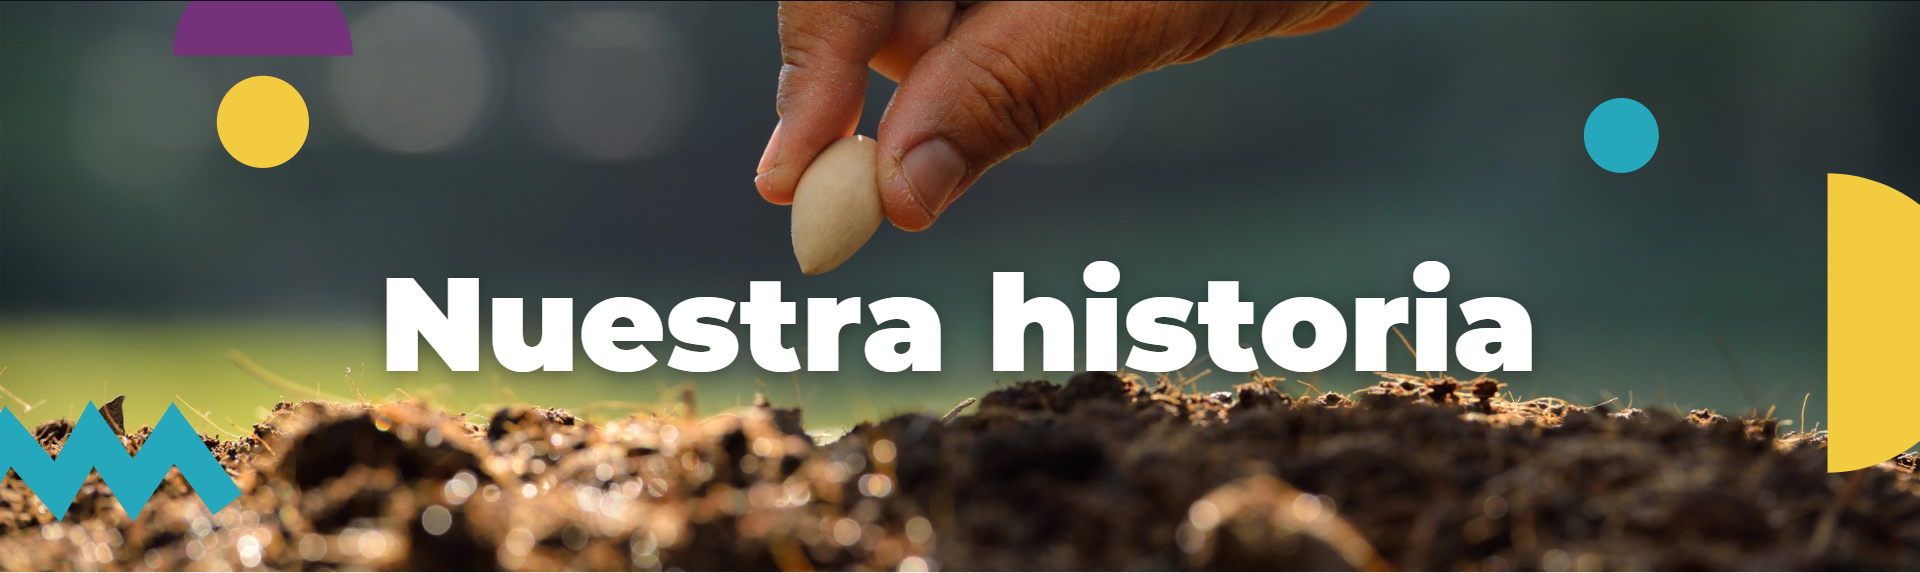 Imagen de Portada de Sección "Nuestra Historia" - Mano plantando semilla